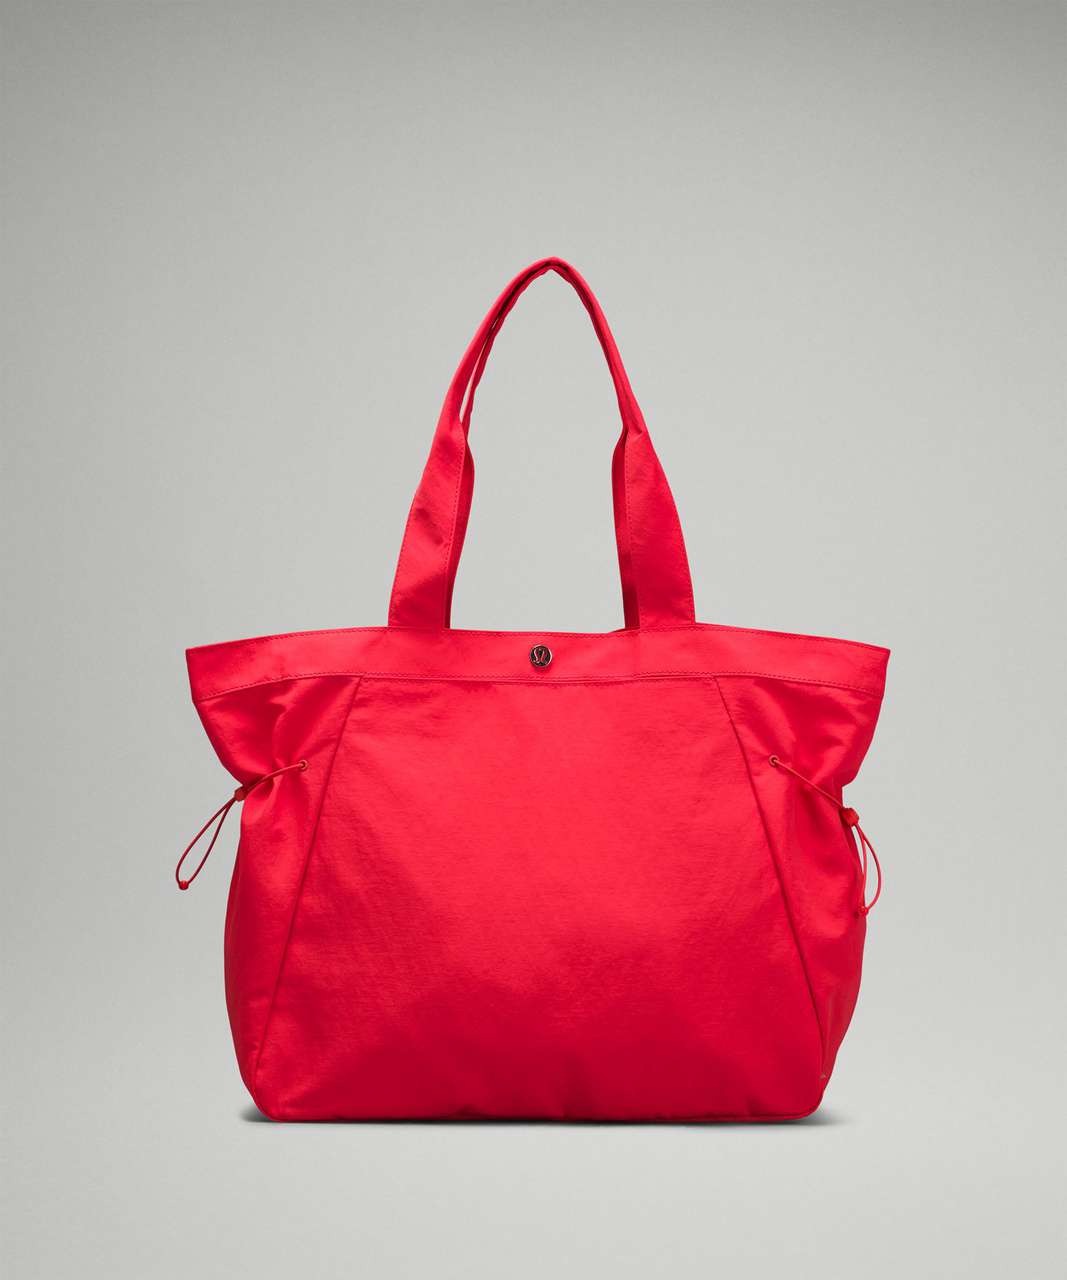 Lululemon Side-Cinch Shopper Bag 18L - Love Red